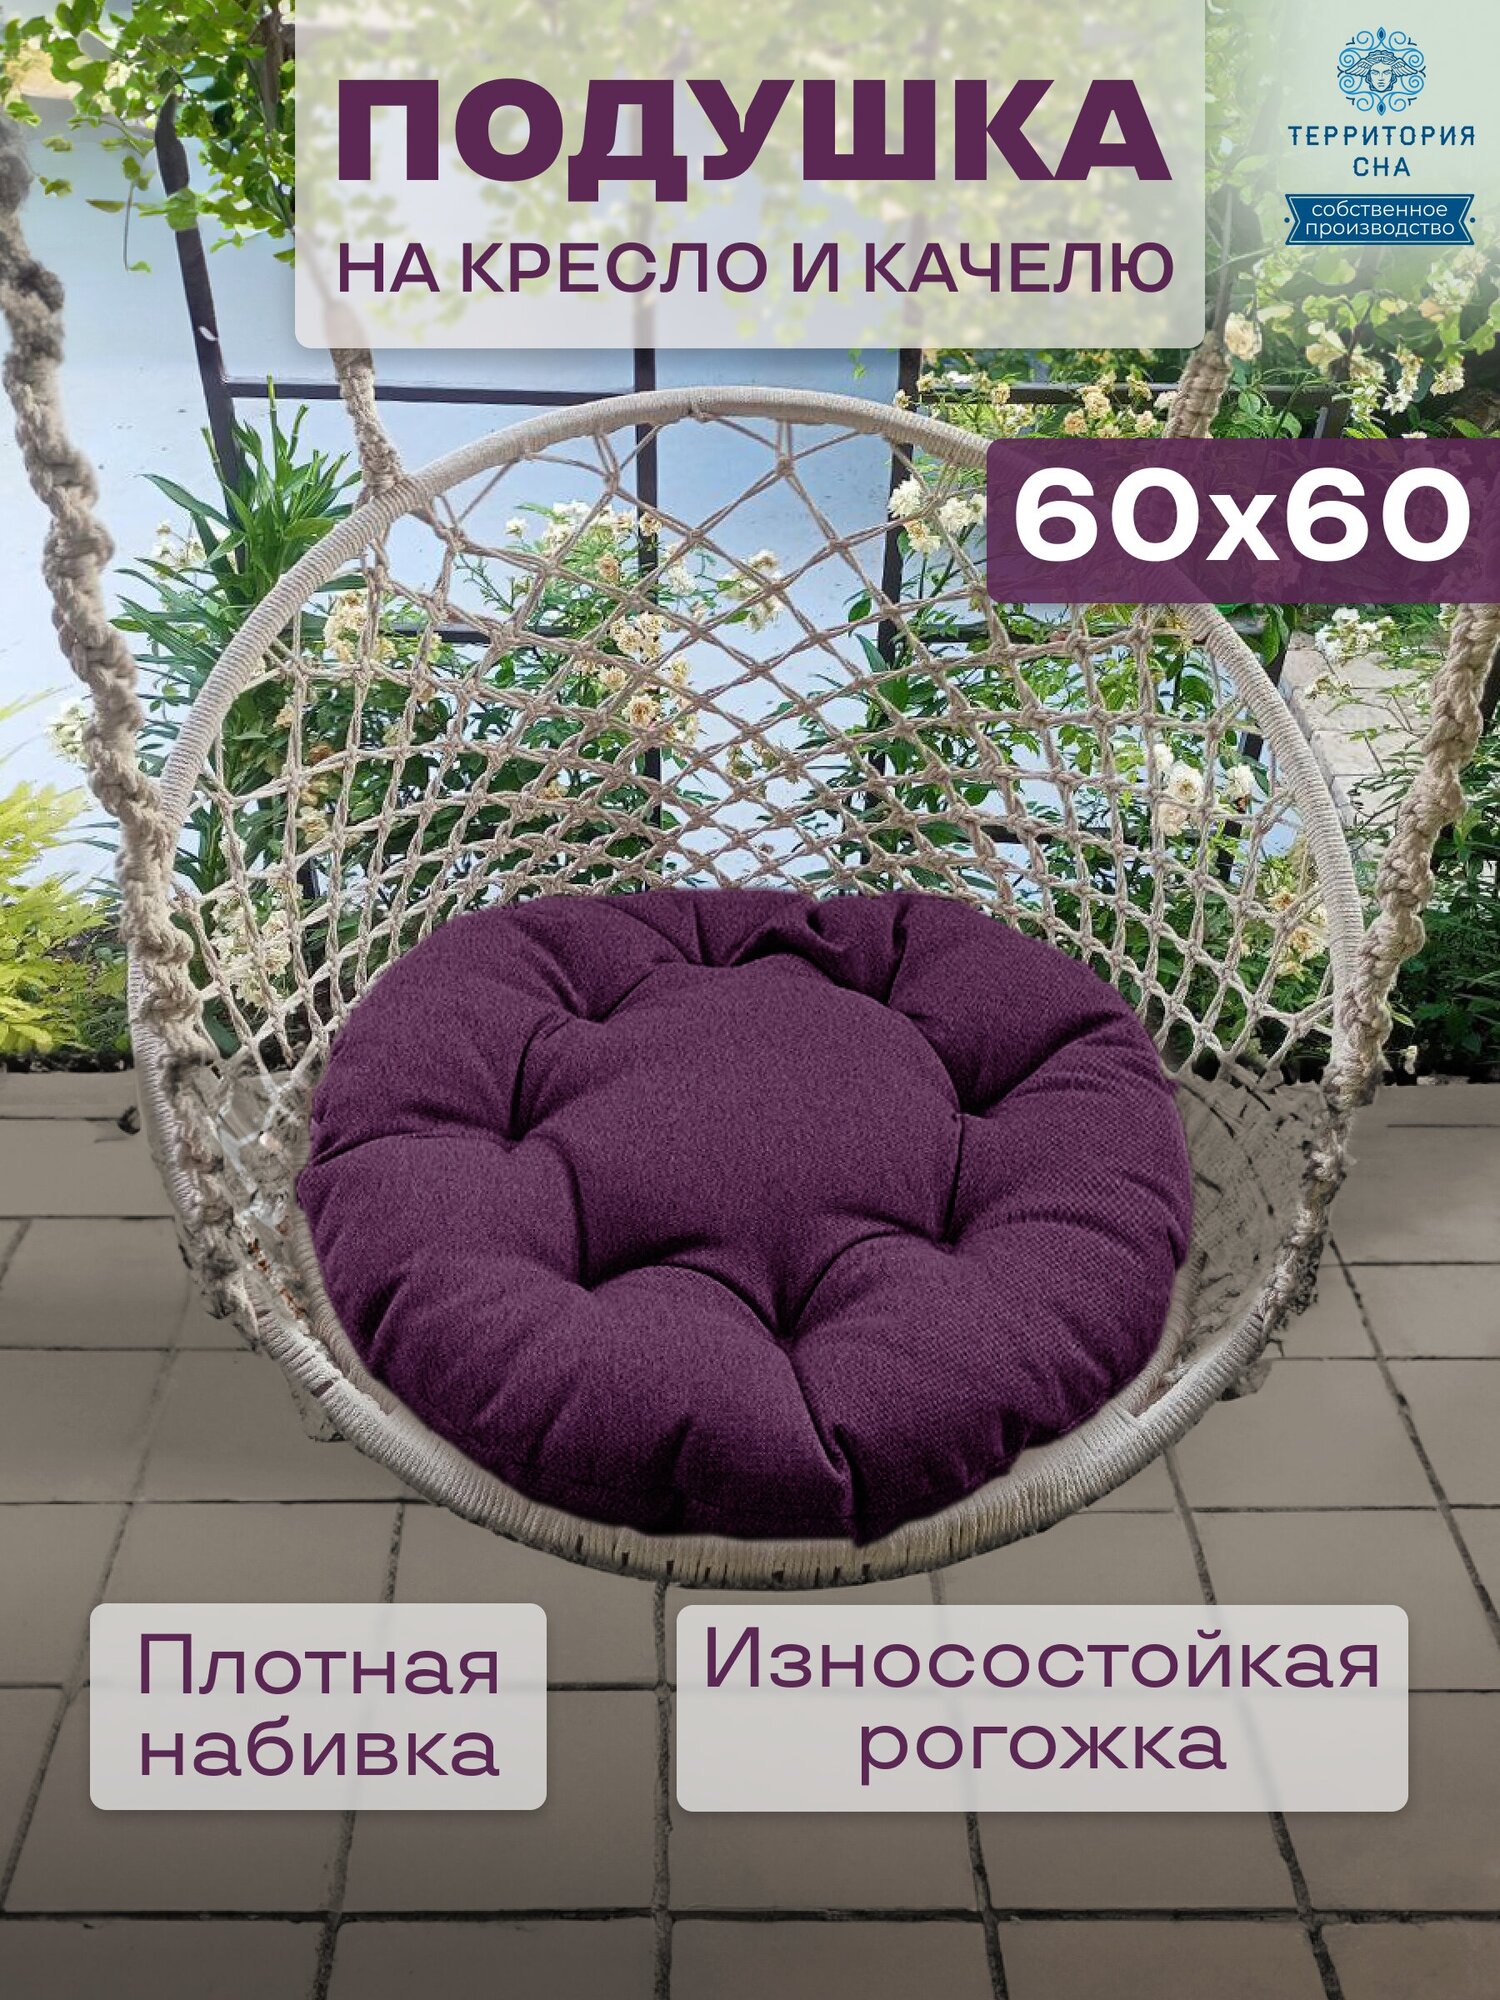 Подушка на кресло из рогожки, диаметр 60, цвет: фиолетовый